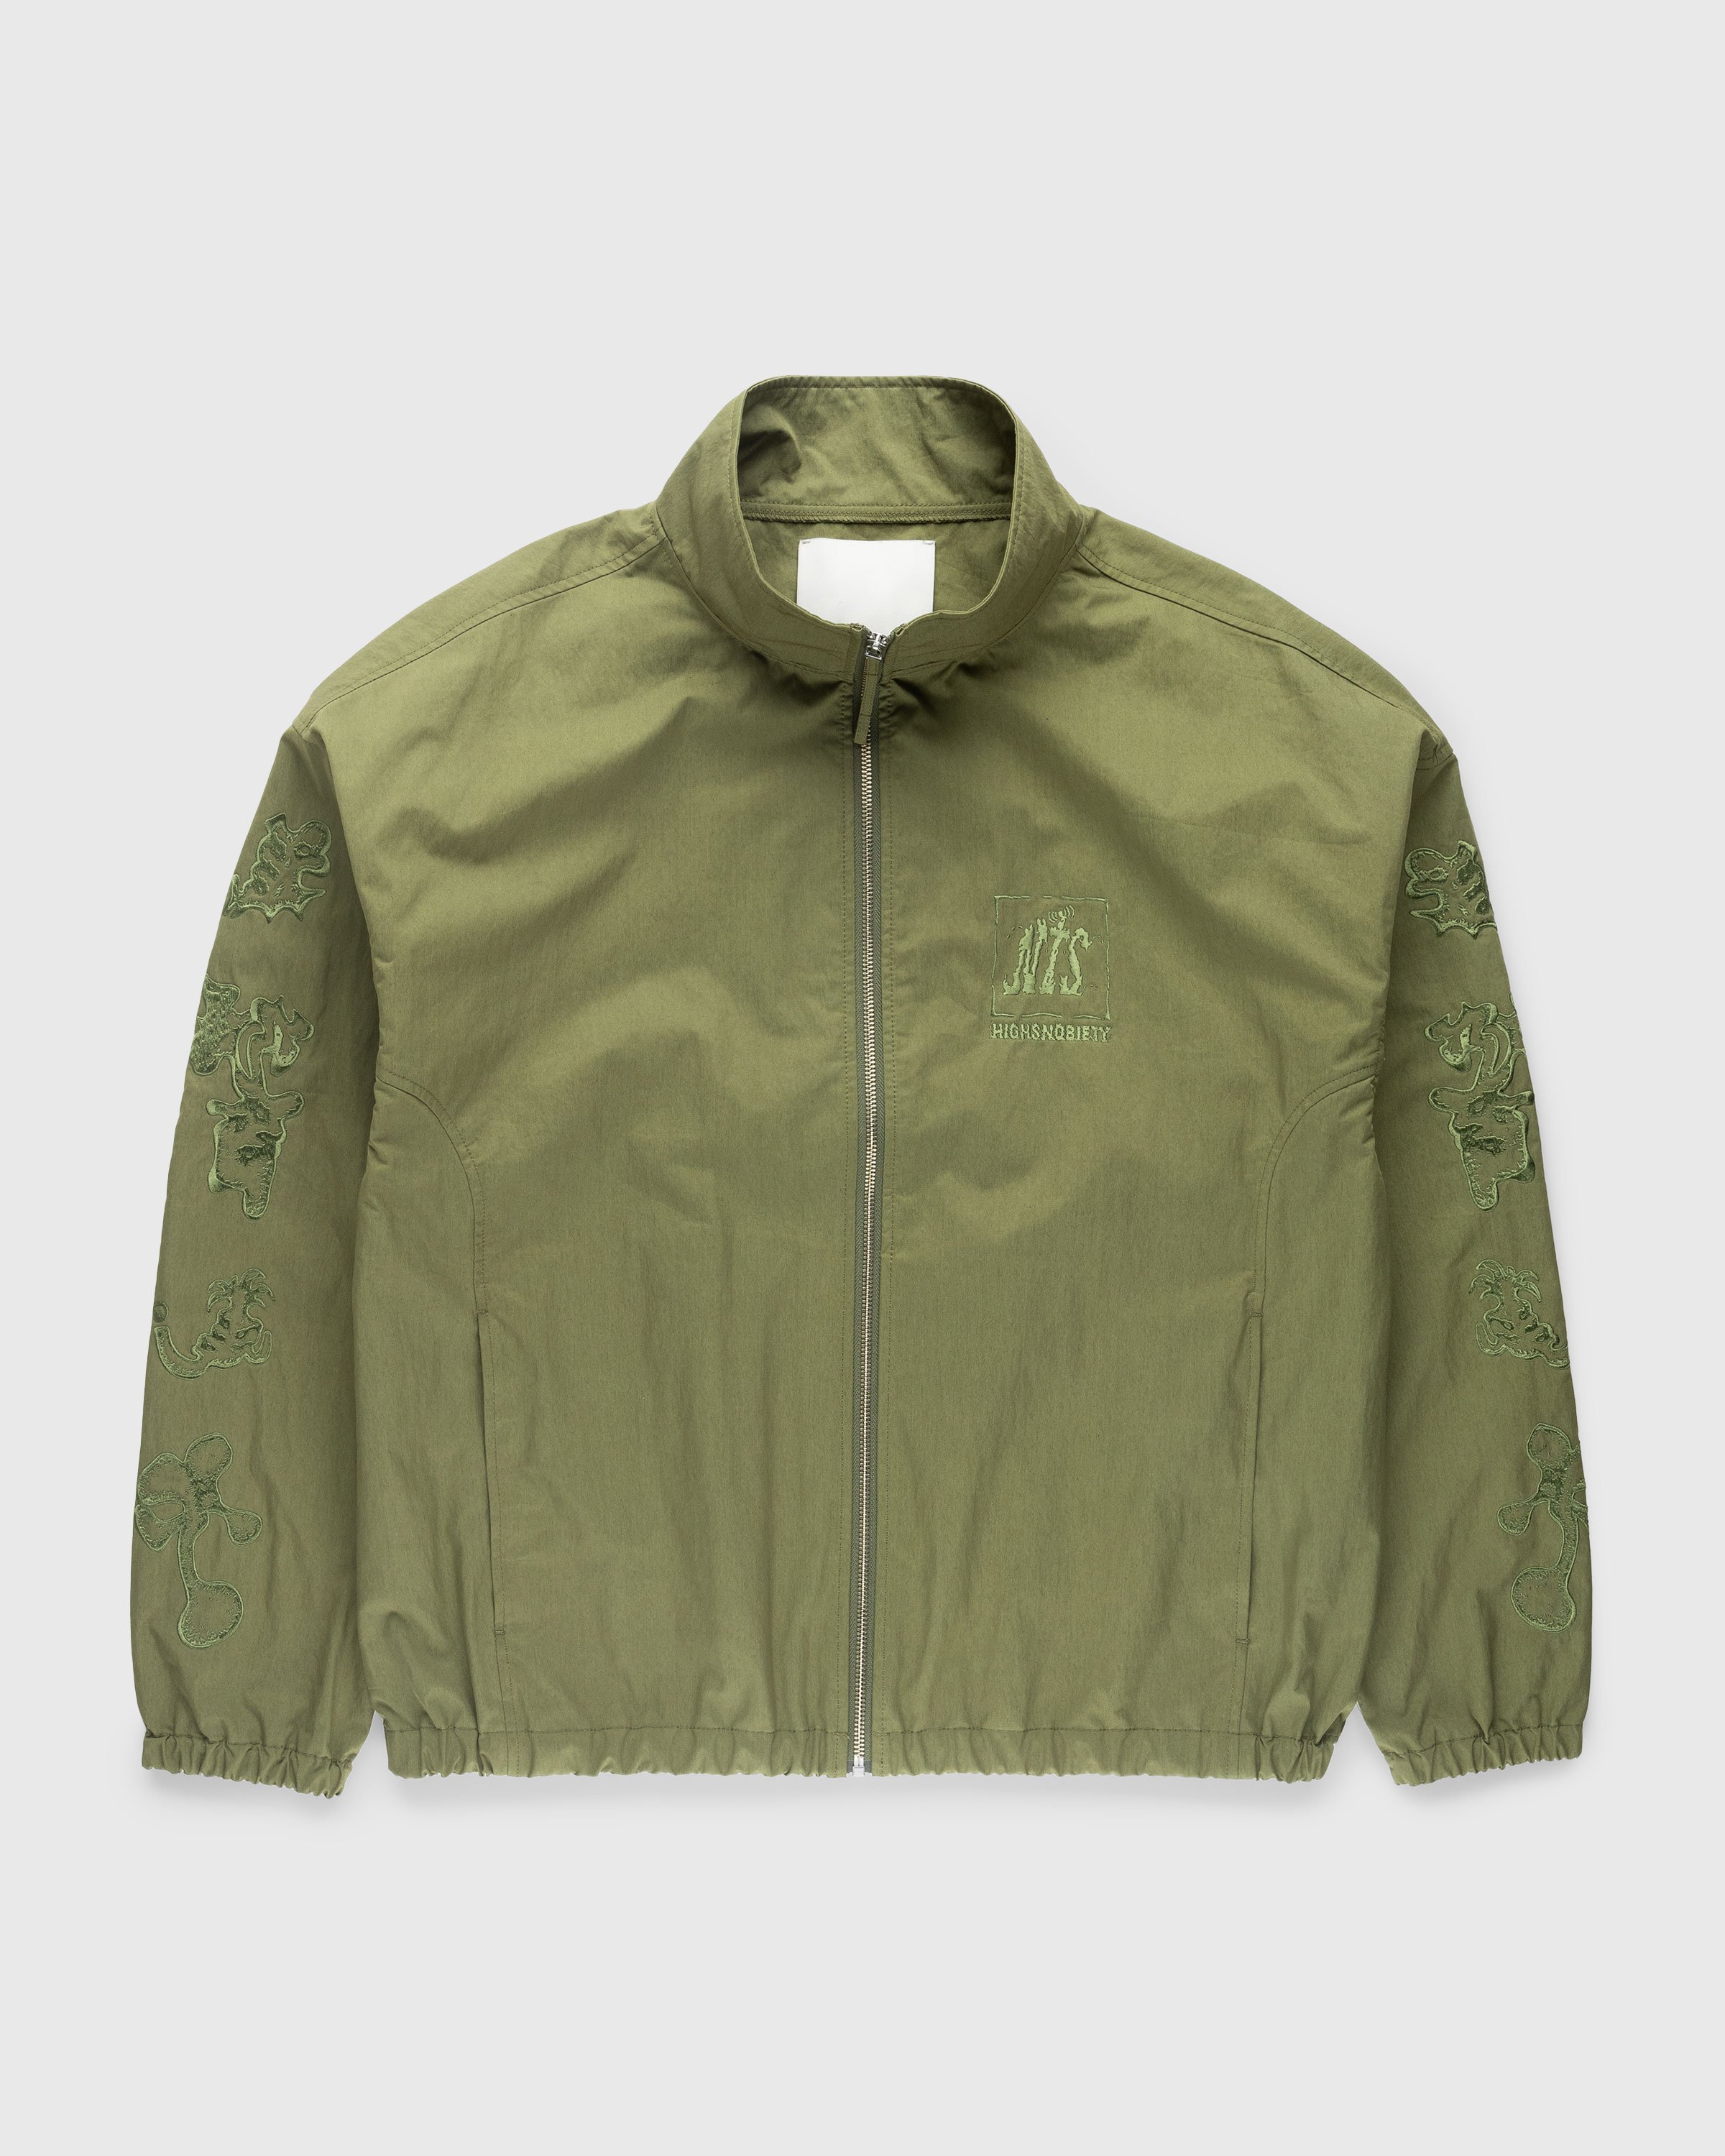 NTS x Highsnobiety - Brushed Nylon Track Jacket Green - Clothing - Green - Image 1